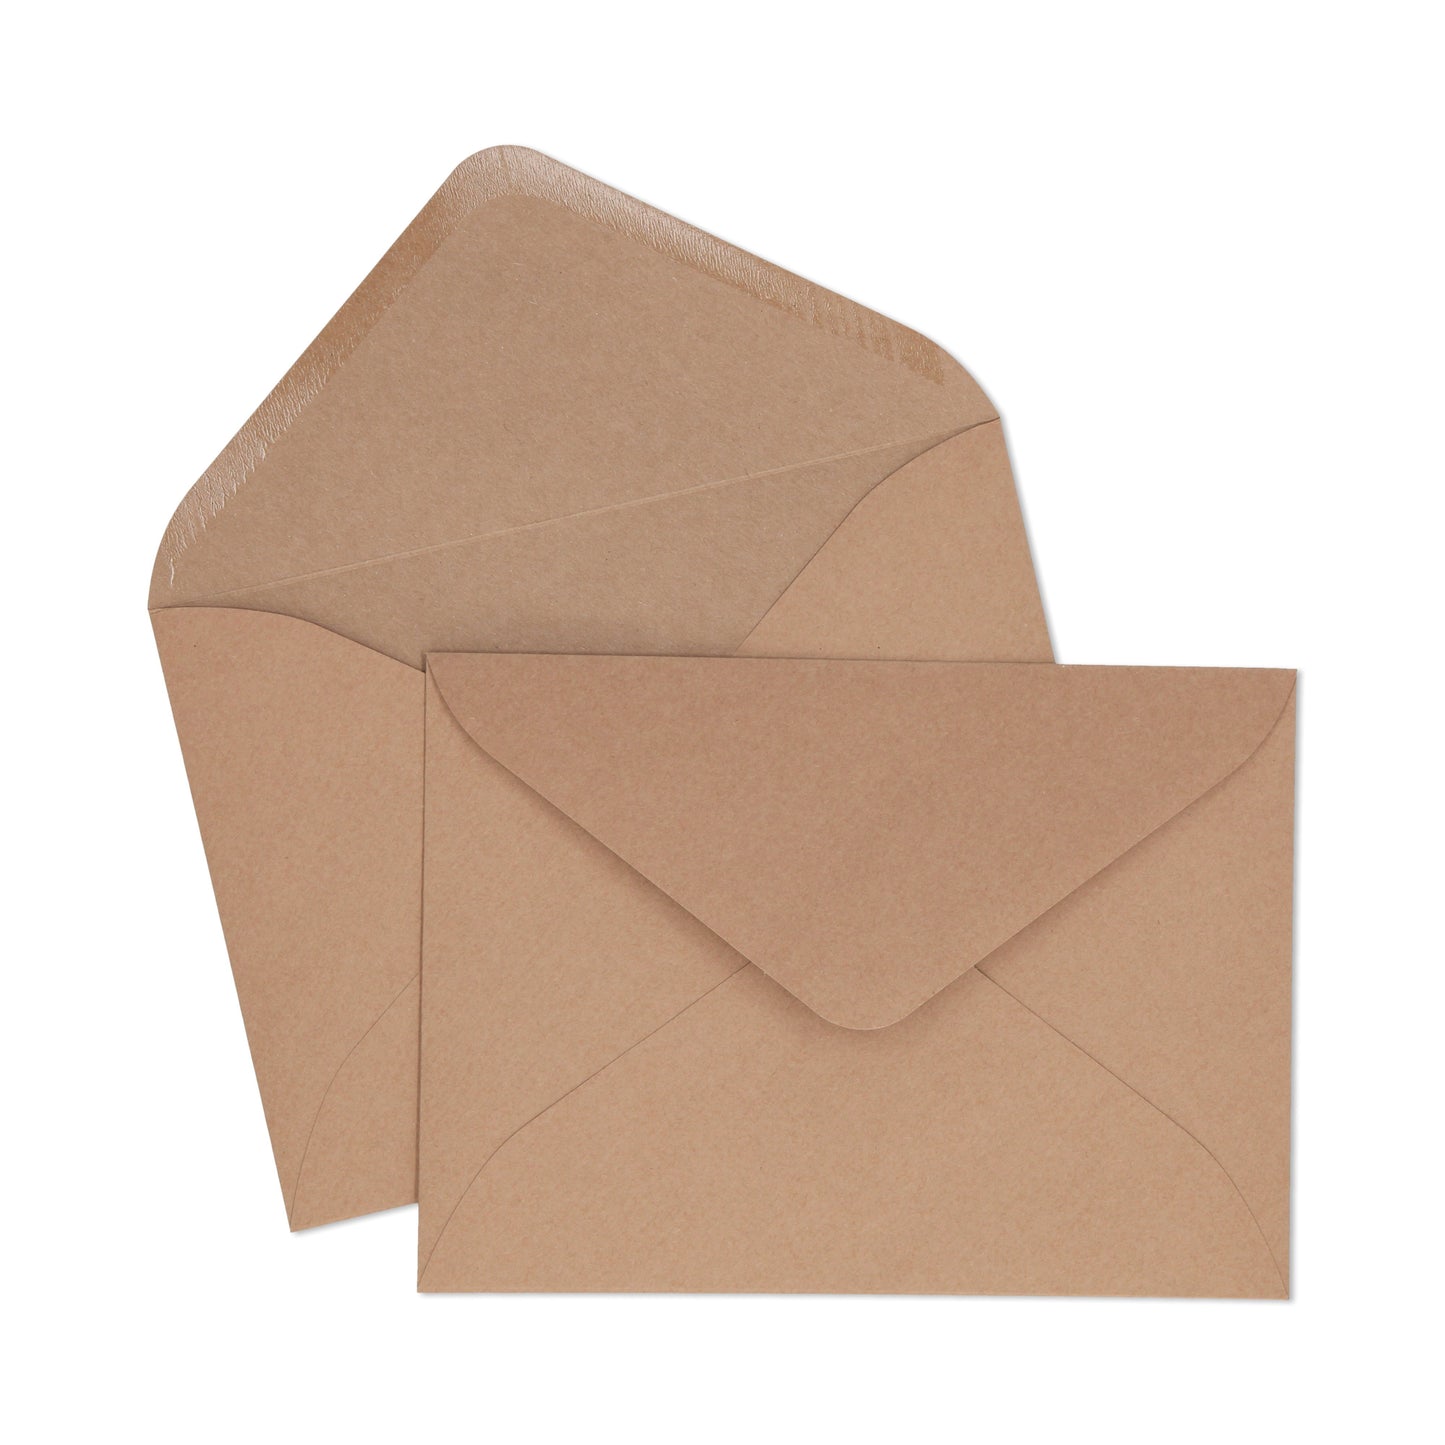 C5 Kraft Envelope - 10 units